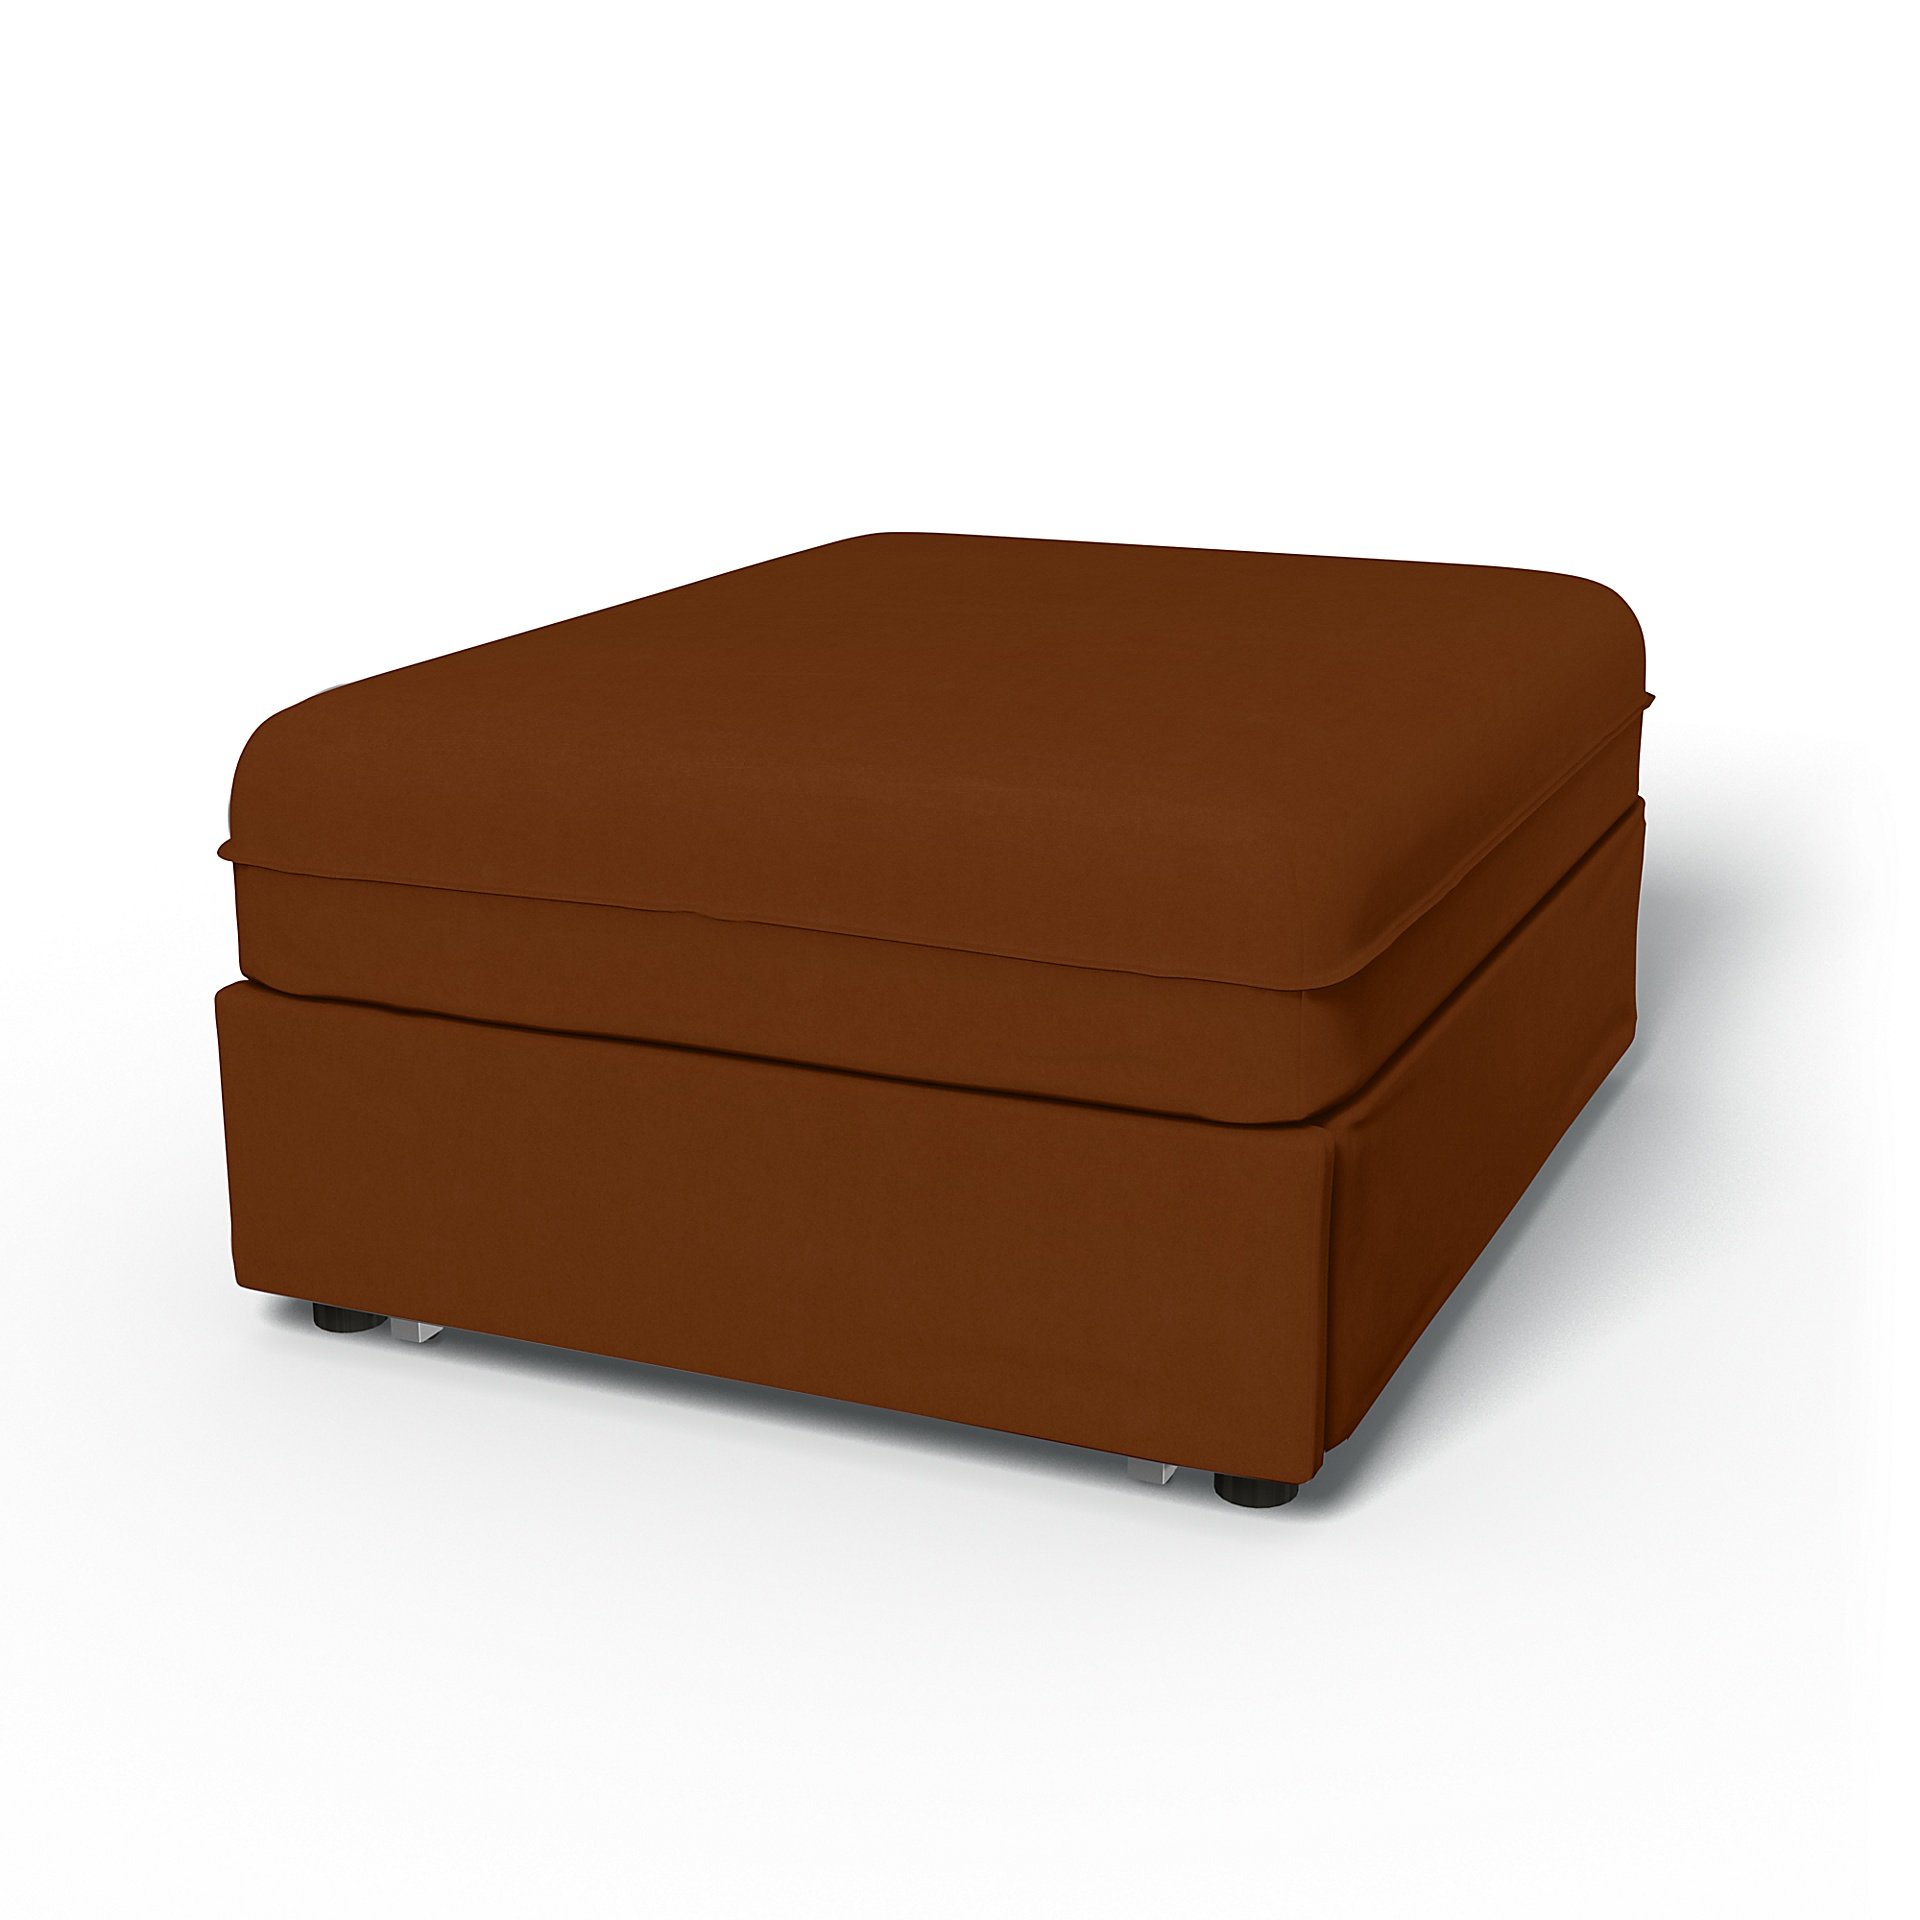 IKEA - Vallentuna Seat Module with Sofa Bed Cover 80x100cm 32x39in, Cinnamon, Velvet - Bemz